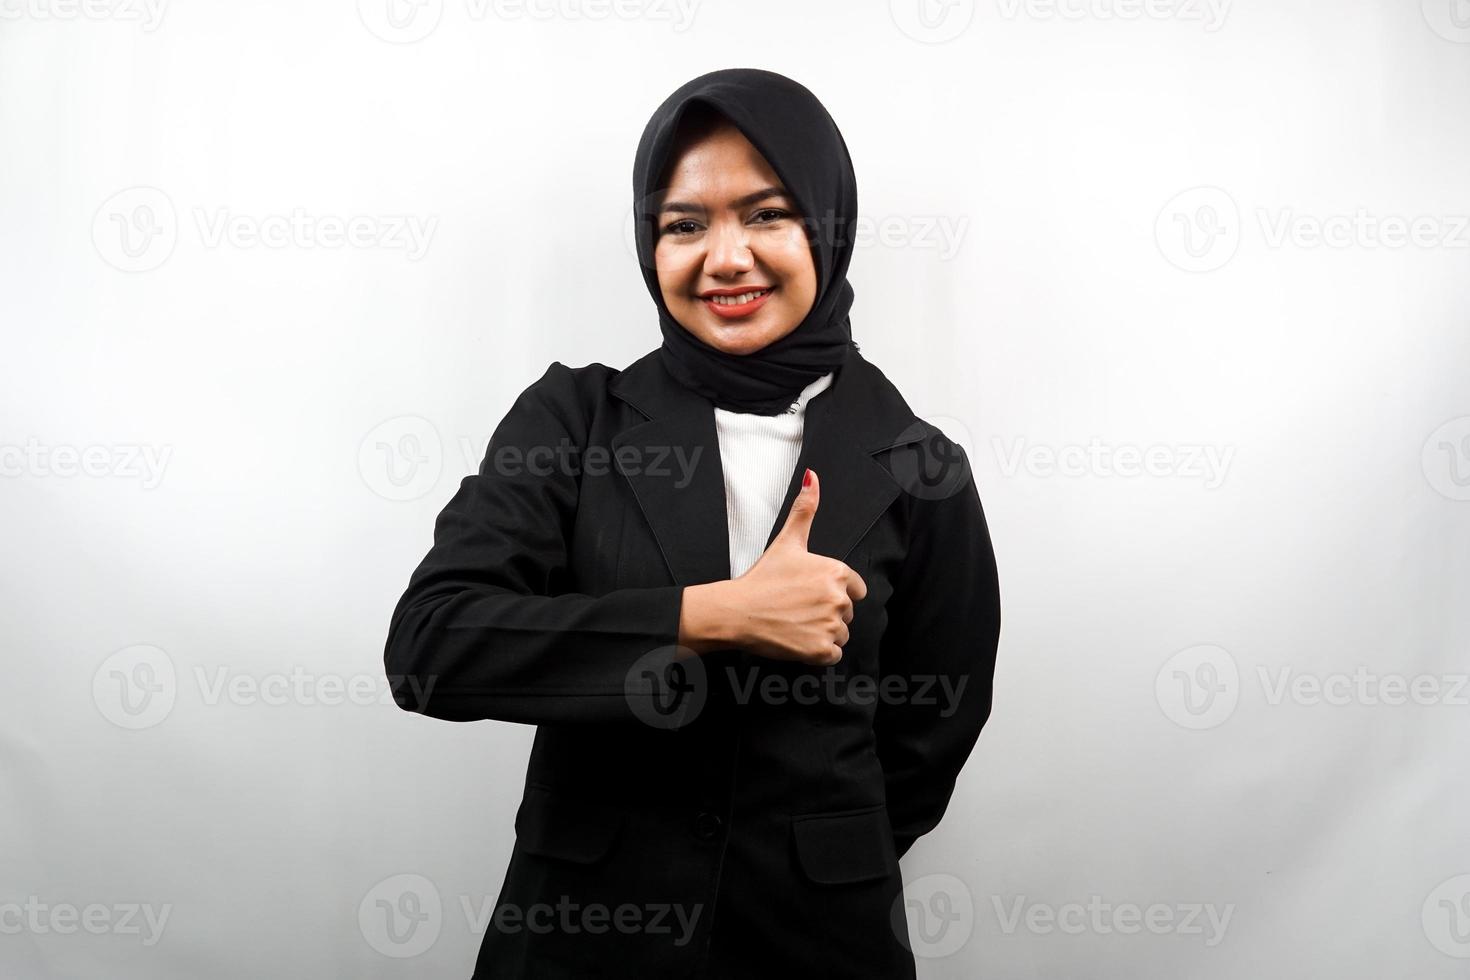 schöne junge asiatische muslimische geschäftsfrau mit daumen hoch hand, ok zeichen, gute arbeit, erfolg, glückwünsche, sieg, selbstbewusst lächelnd, enthusiastisch und fröhlich, kamera isoliert betrachtend foto